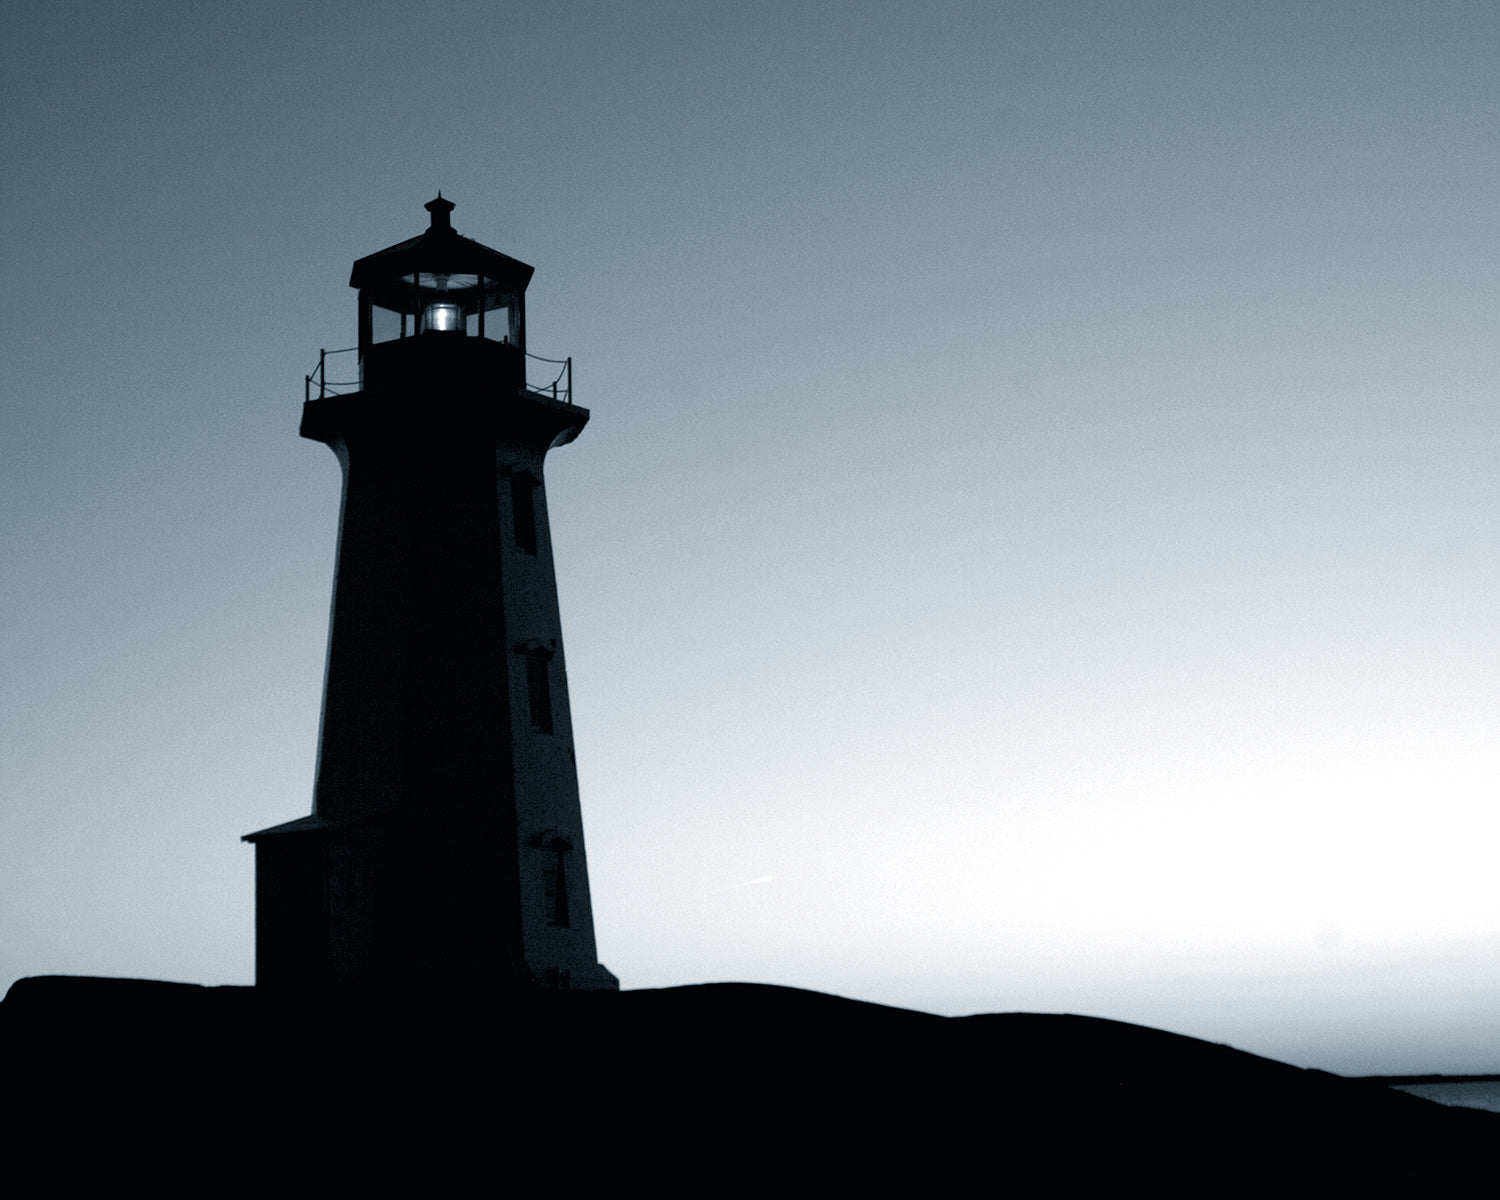 A lighthouse photograph.